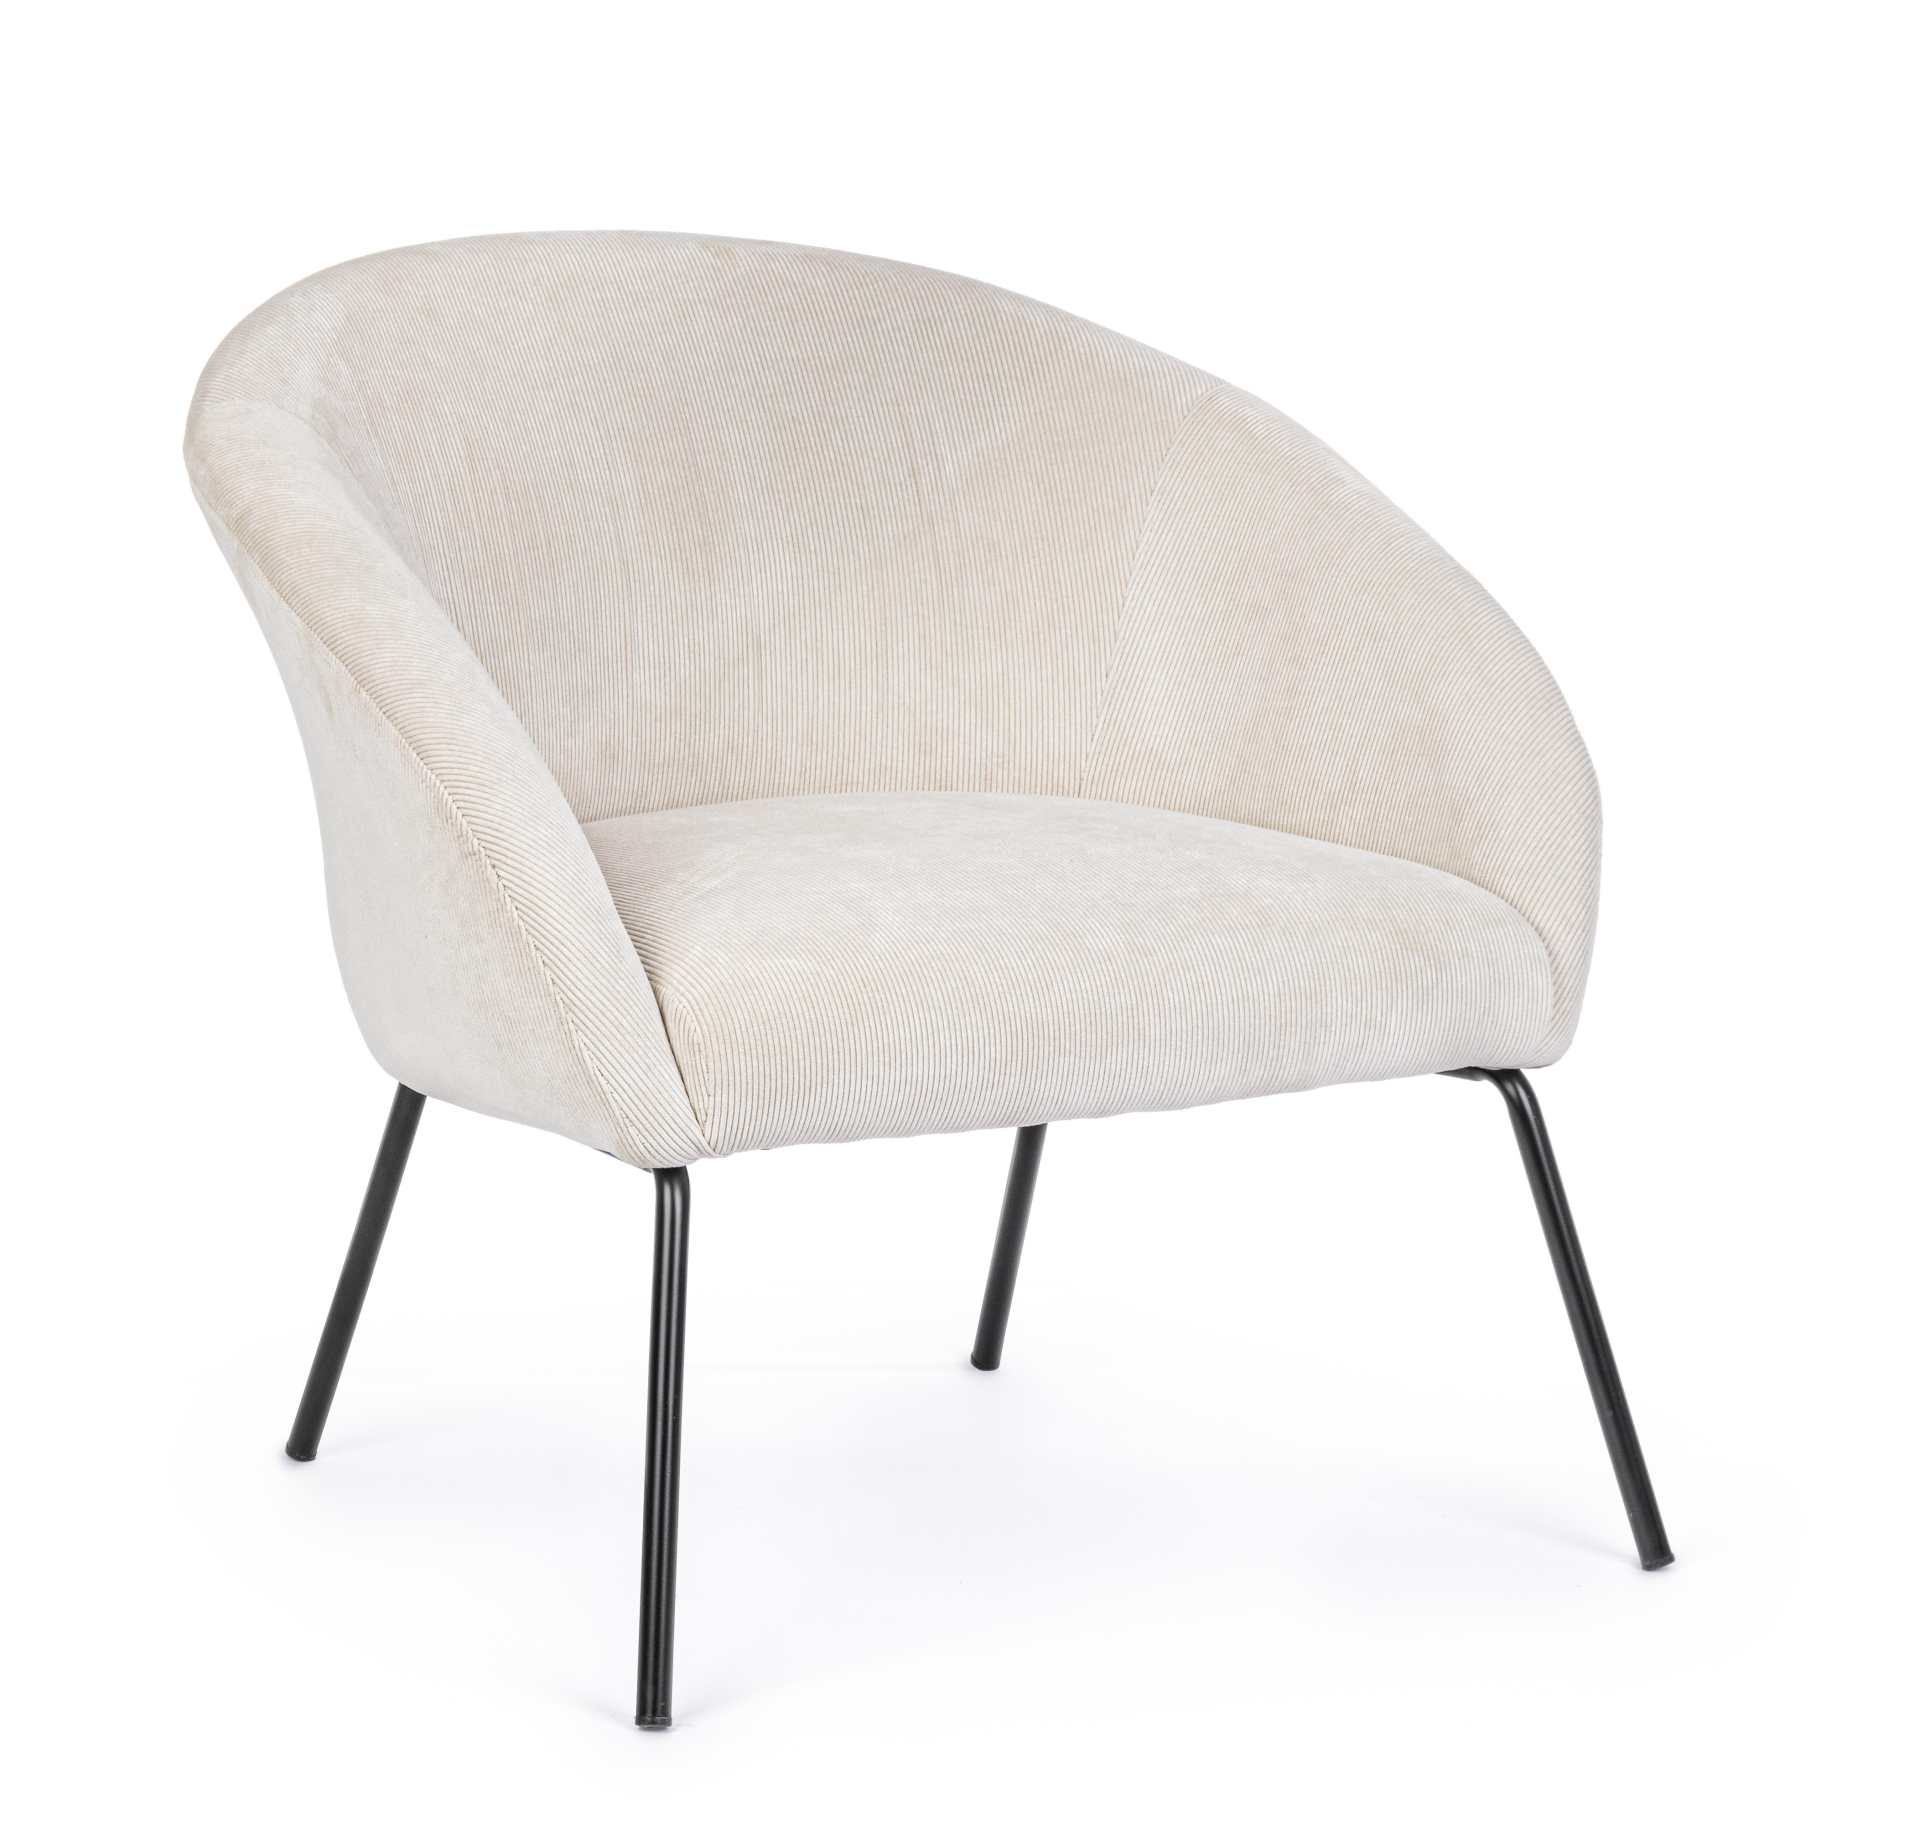 Der Sessel Aiko überzeugt mit seinem modernen Design. Gefertigt wurde er aus Stoff in Cord-Optik, welcher einen weißen Farbton besitzt. Das Gestell ist aus Metall und hat eine schwarze Farbe. Der Sessel besitzt eine Sitzhöhe von 45 cm. Die Breite beträgt 